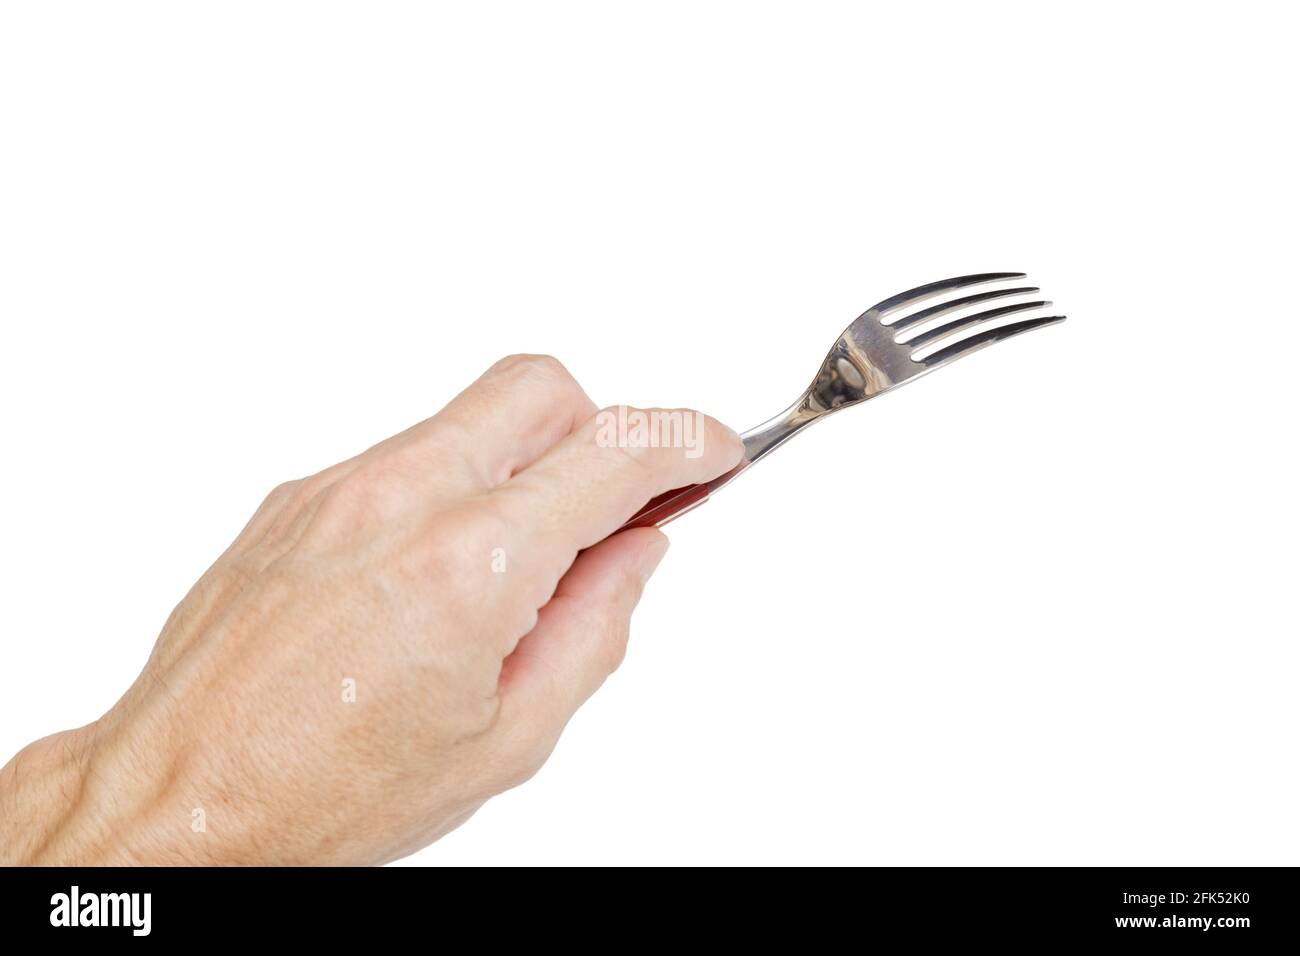 Humains main gauche tenant une fourchette d'argent isolée sur blanc.  Concept Photo Stock - Alamy